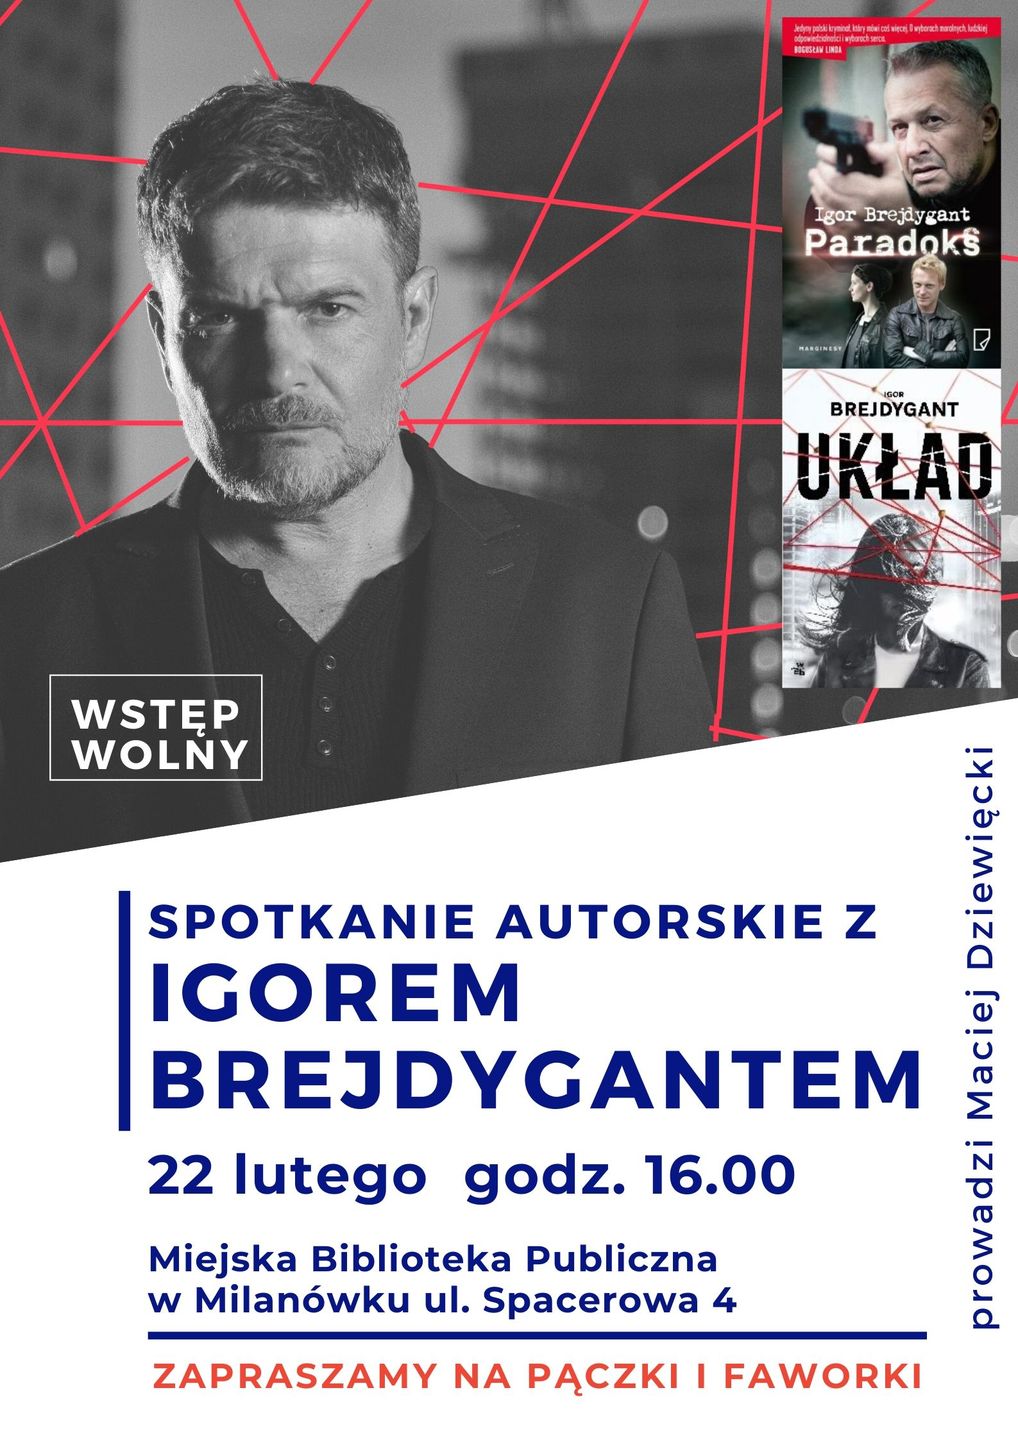 Plakat promujący spotkanie z Igorem Brejdygantem